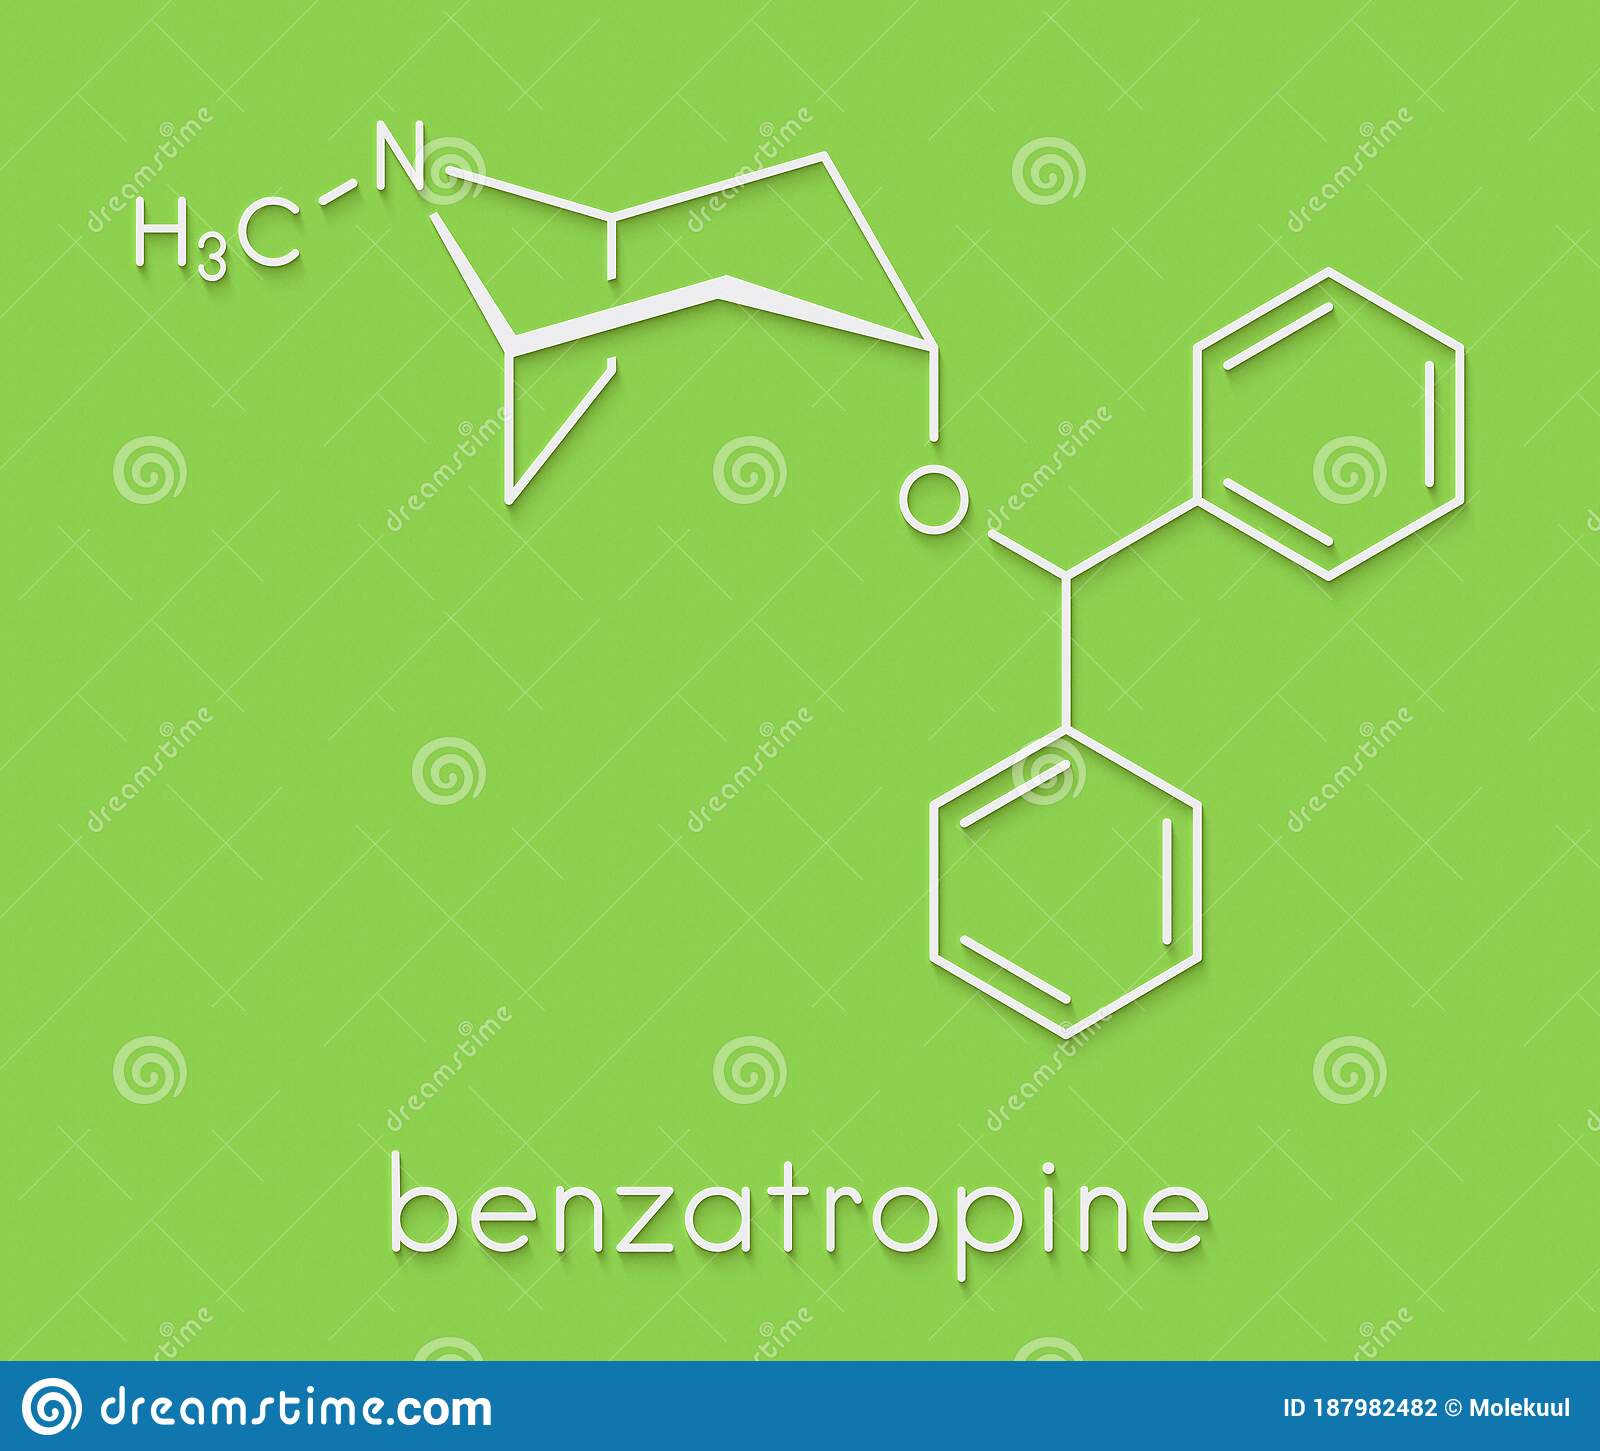 Benzatropine (benztropine) Anticholinergic Drug Molecule. Used In ...